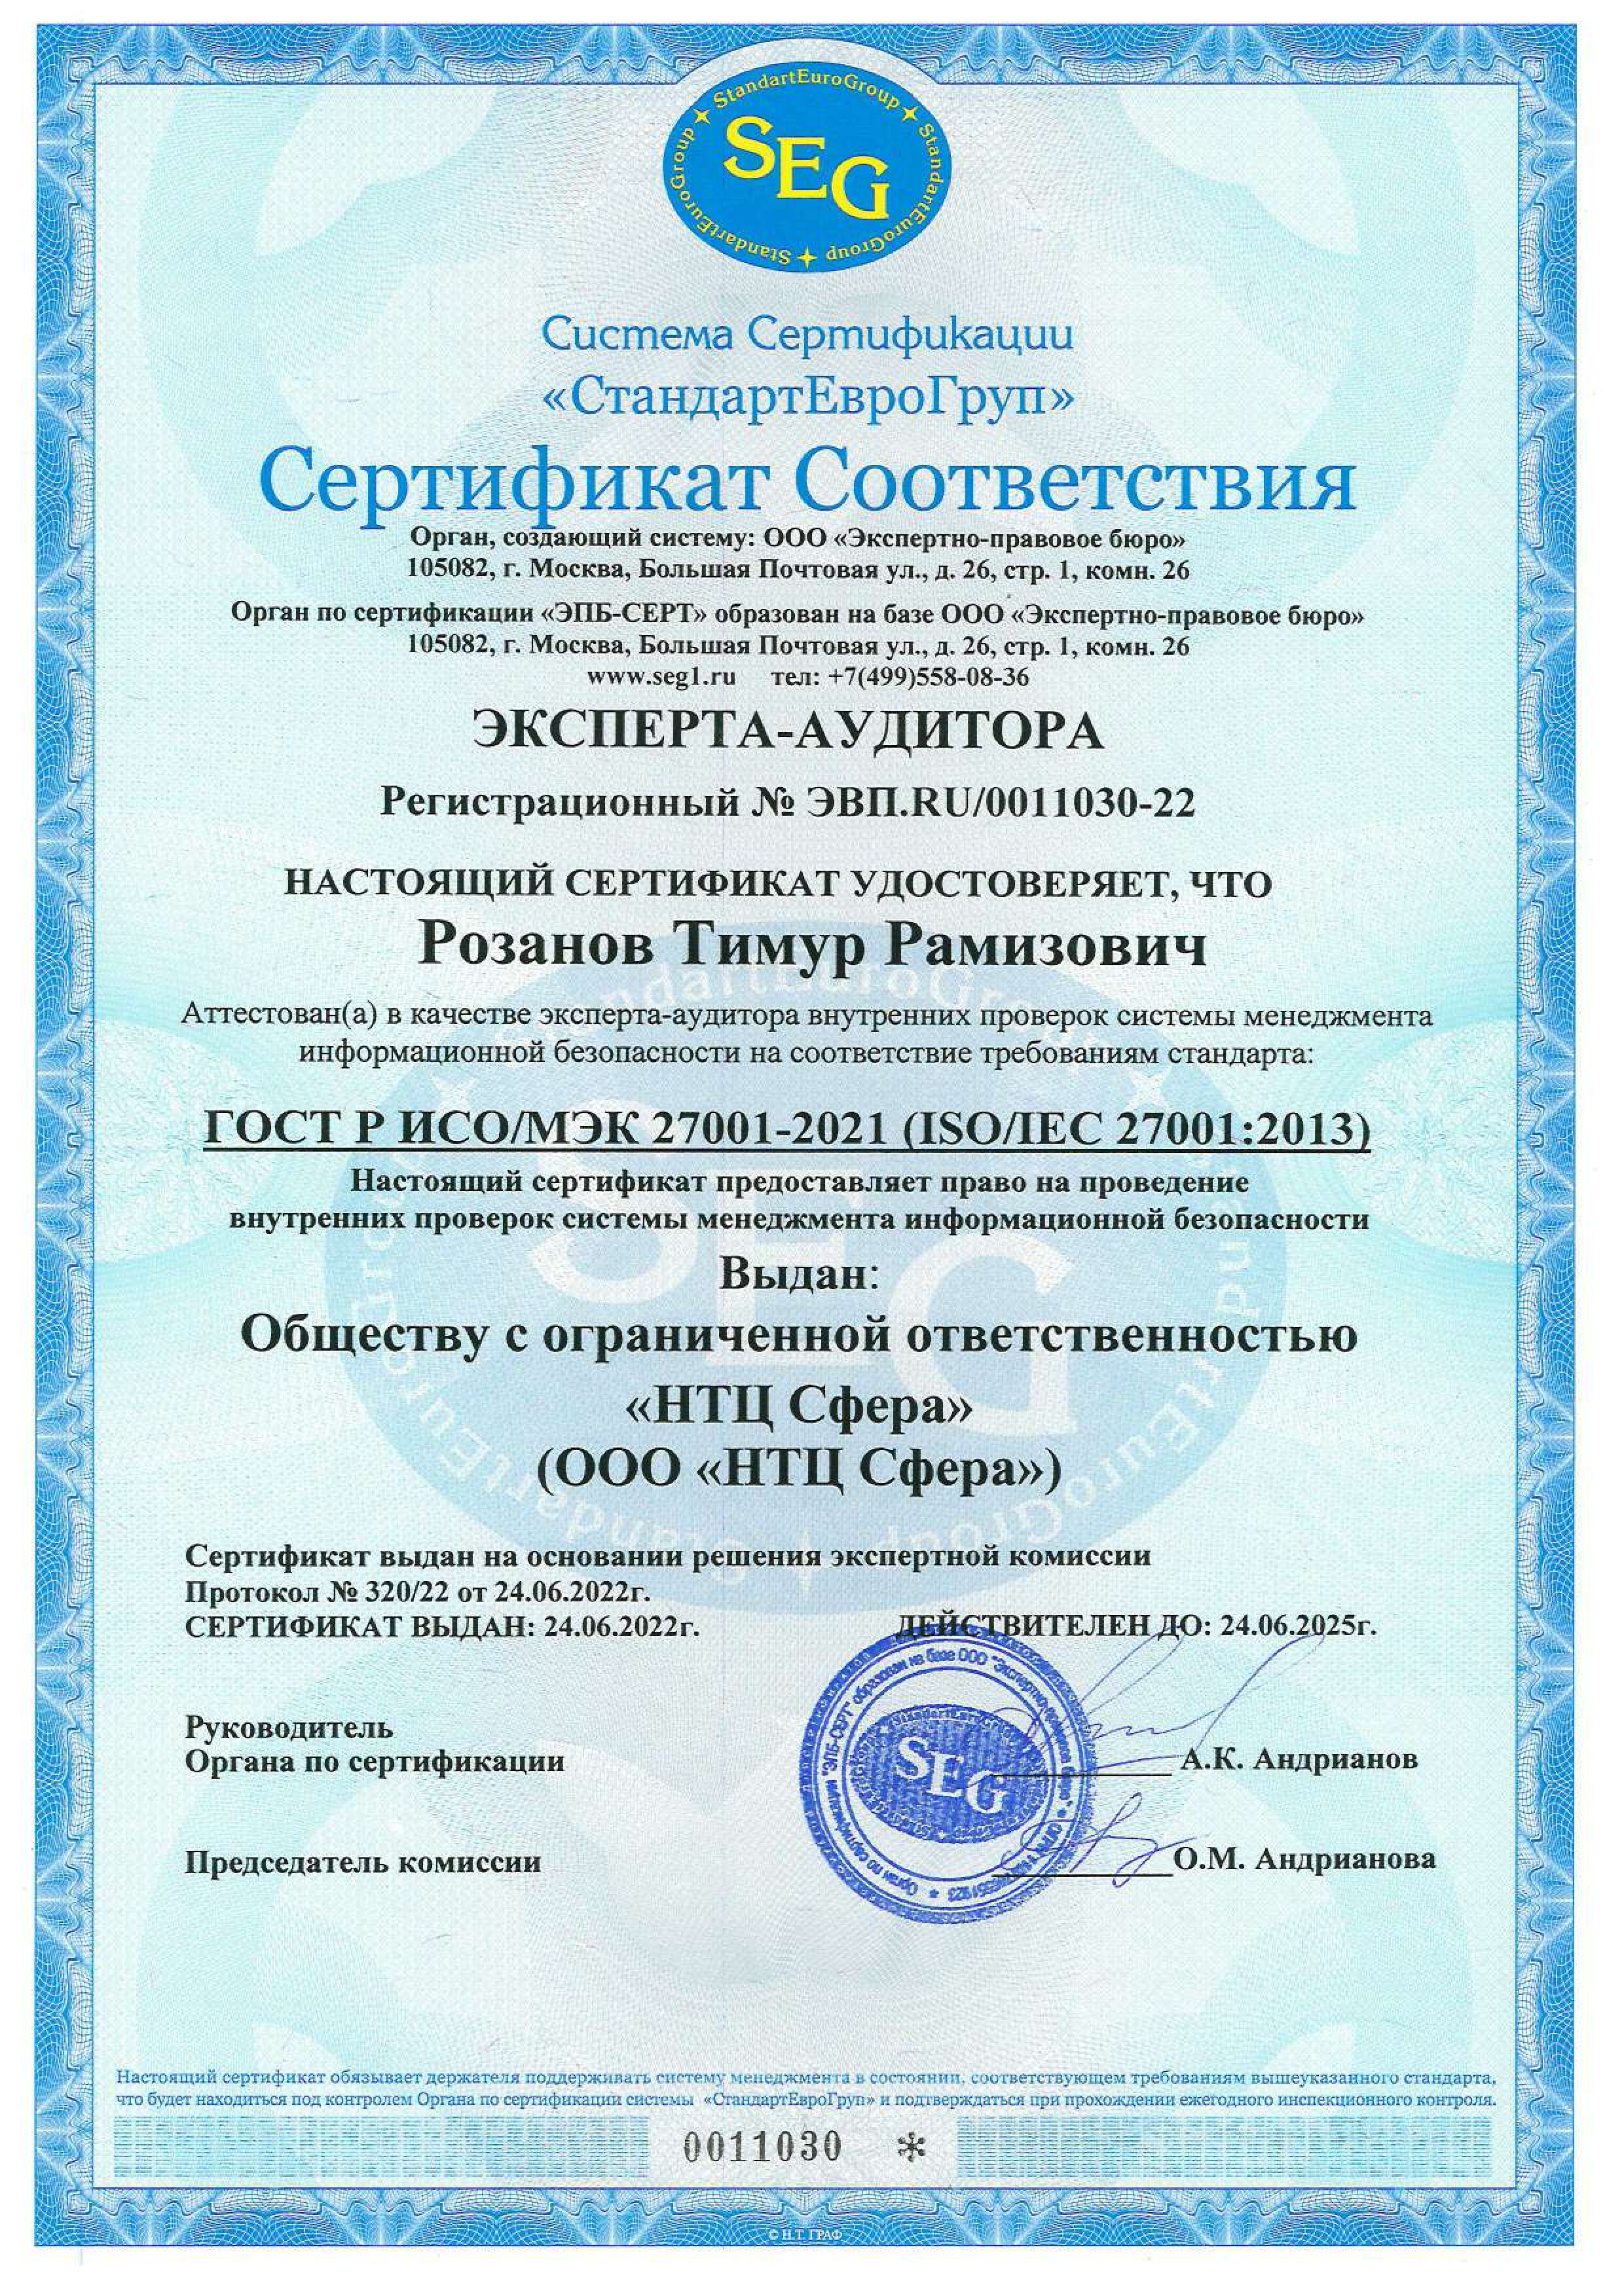 Сертификат Эксперта-аудитора СМИБ № ЭВП.RU/0011030-22